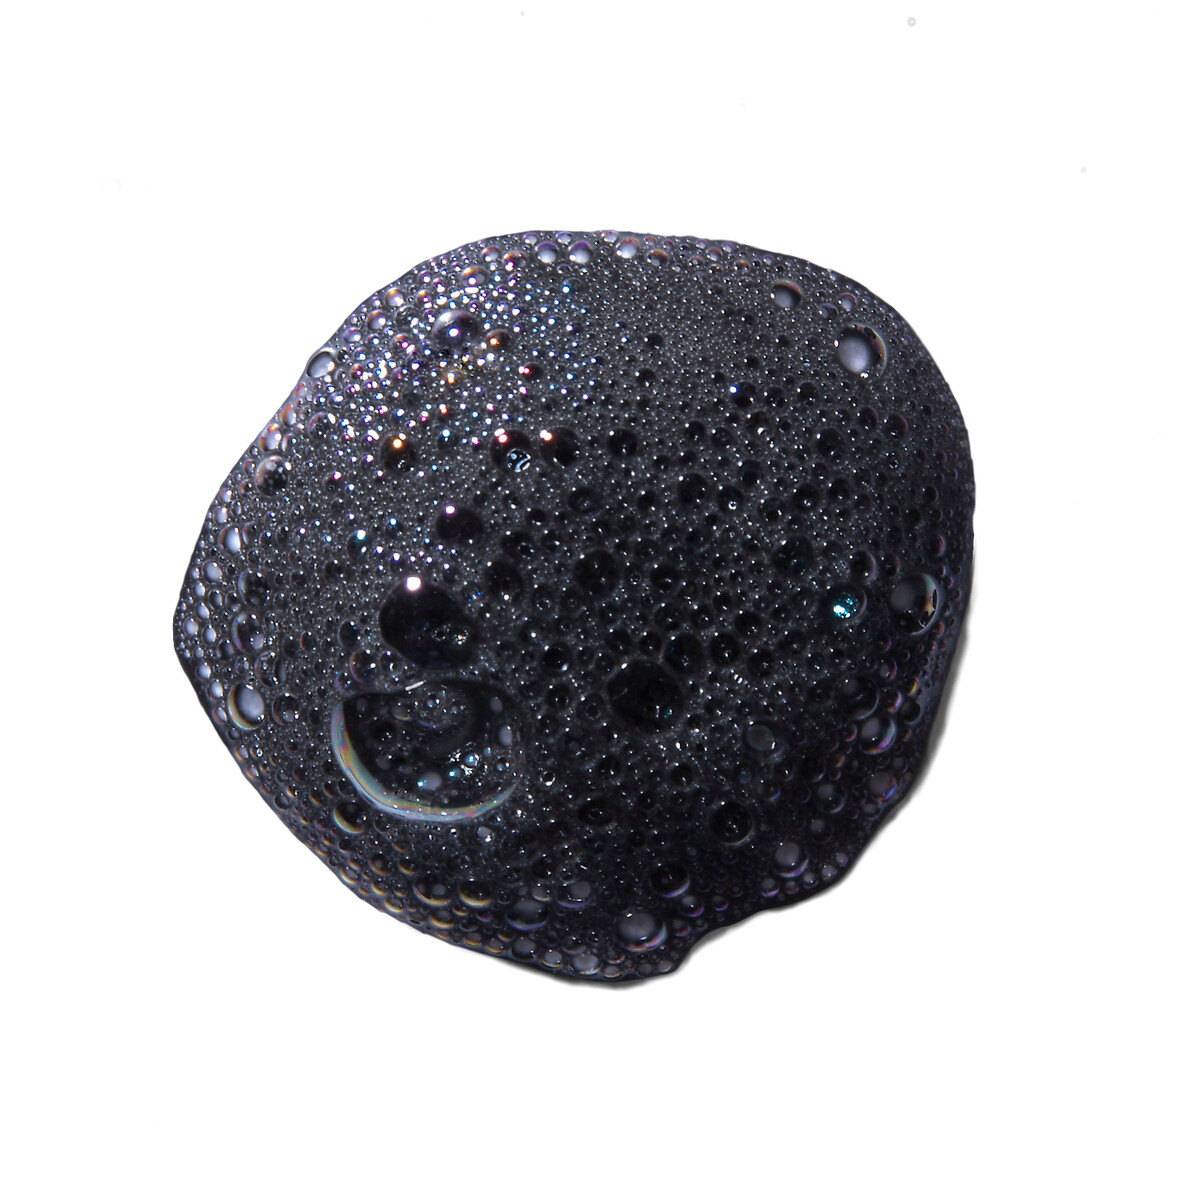 Black Charcoal Mousse - Schiuma detergente al carbone, Nero, large image number 1